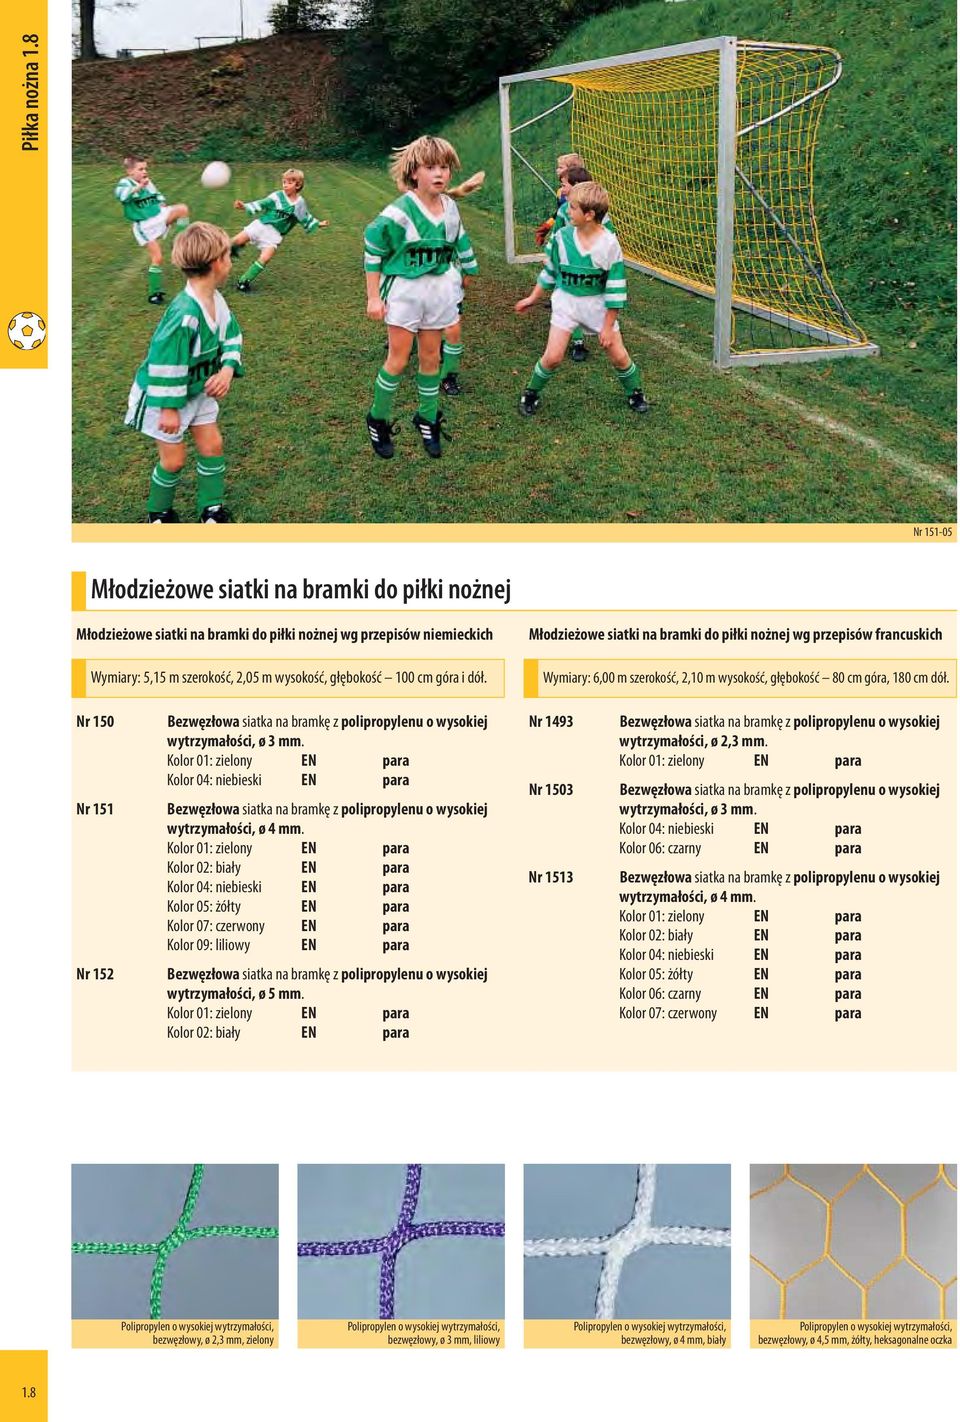 Młodzieżowe siatki na bramki do piłki nożnej wg przepisów francuskich Wymiary: 6,00 m szerokość, 2,10 m wysokość, głębokość 80 cm góra, 180 cm dół.